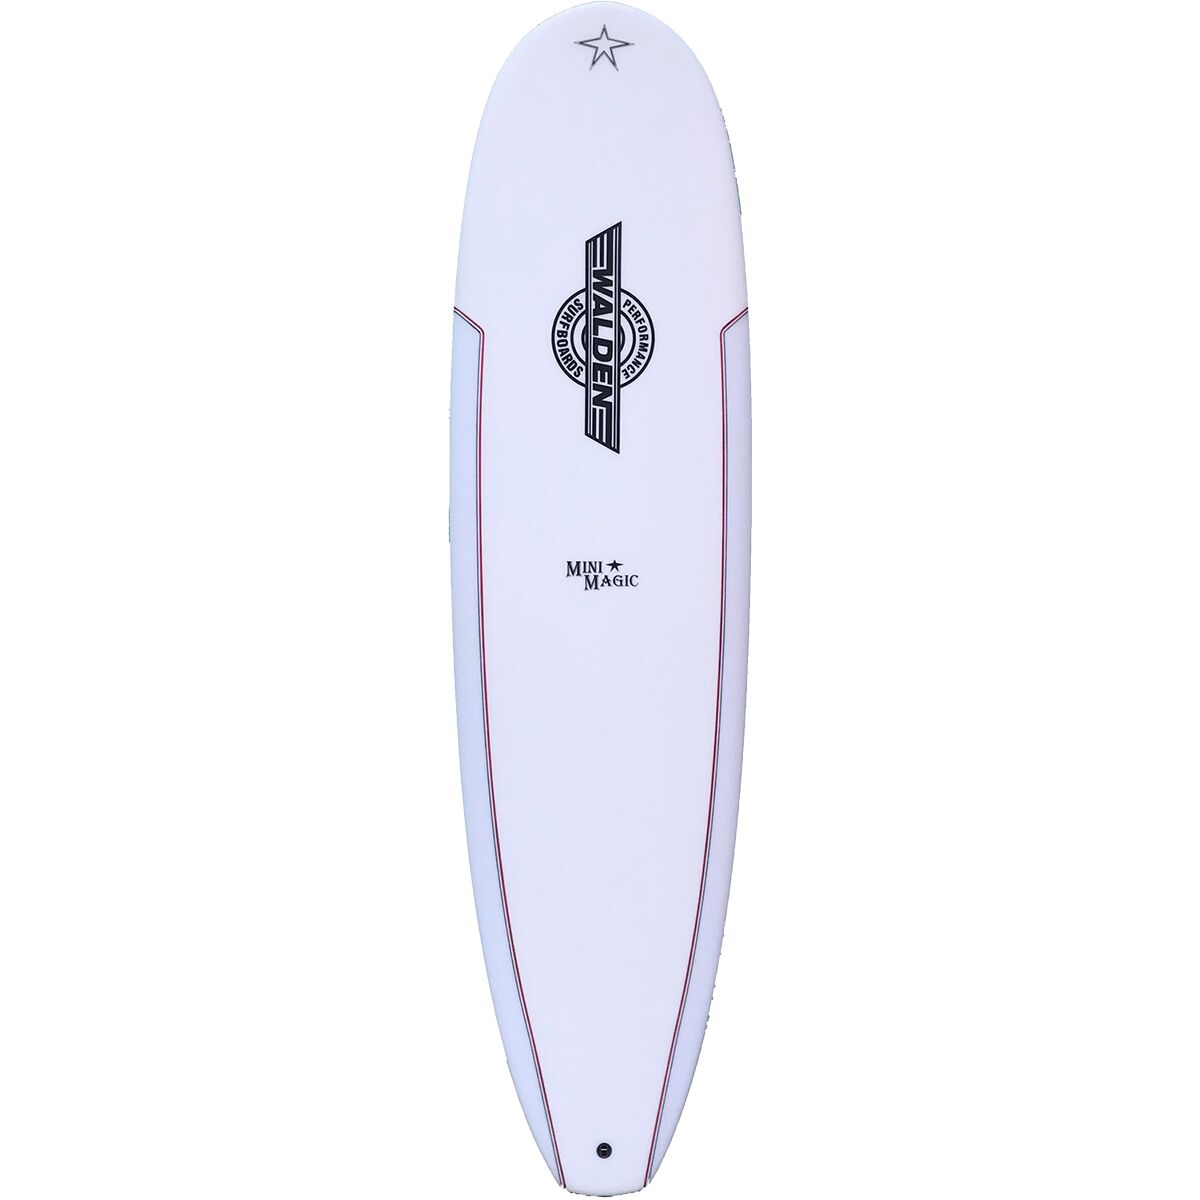 Walden Surfboards Mini Magic Model Longboard Surfboard